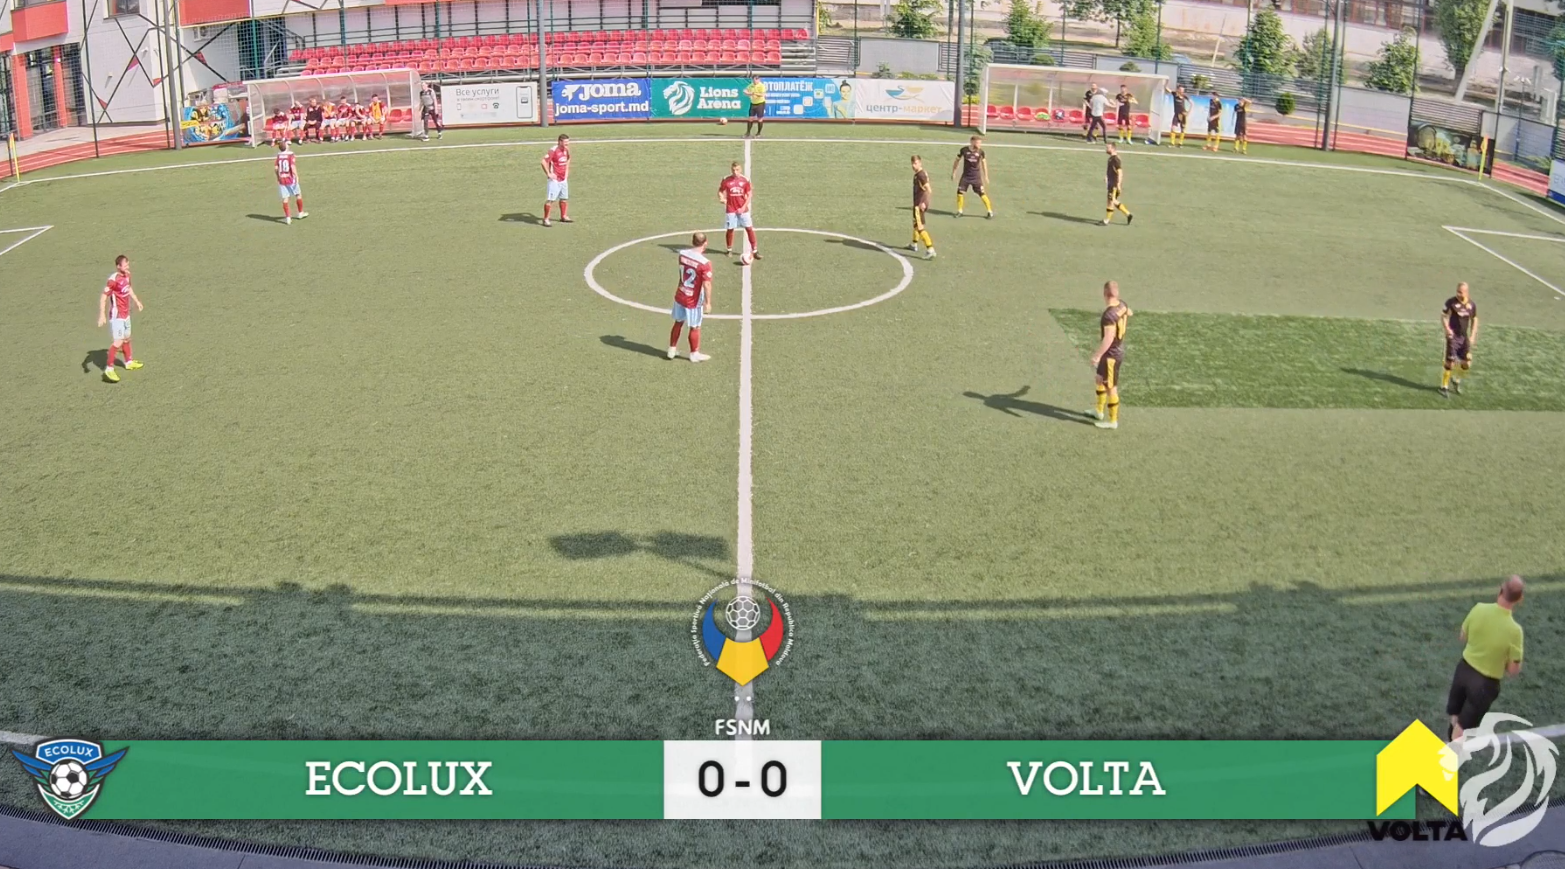 Ecolux/Volta & Nistru/IDC Полуфиналы Национального Чемпионата по мини футболу Плей офф 2021-2022